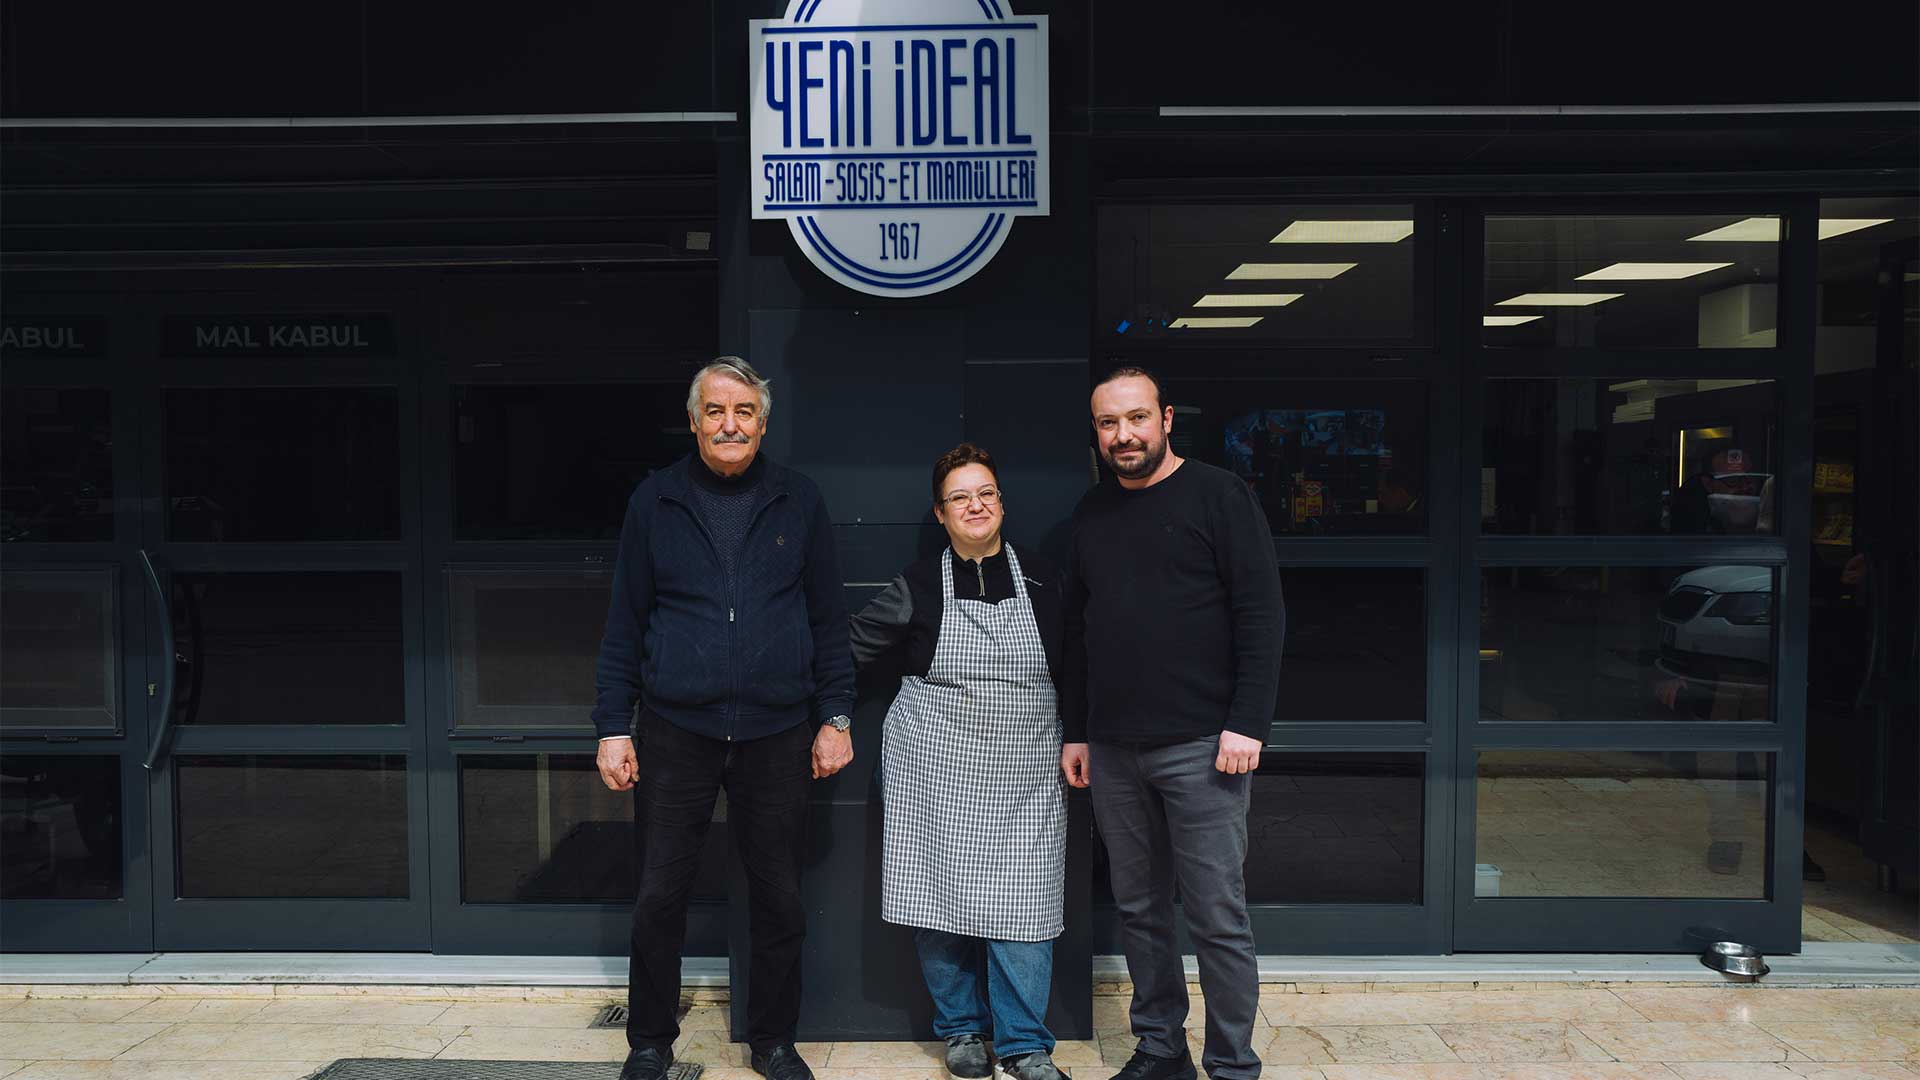 Κοζμάογλου - Yeni Ideal: Ένα ρωμαίικο κατάστημα αλλαντικών